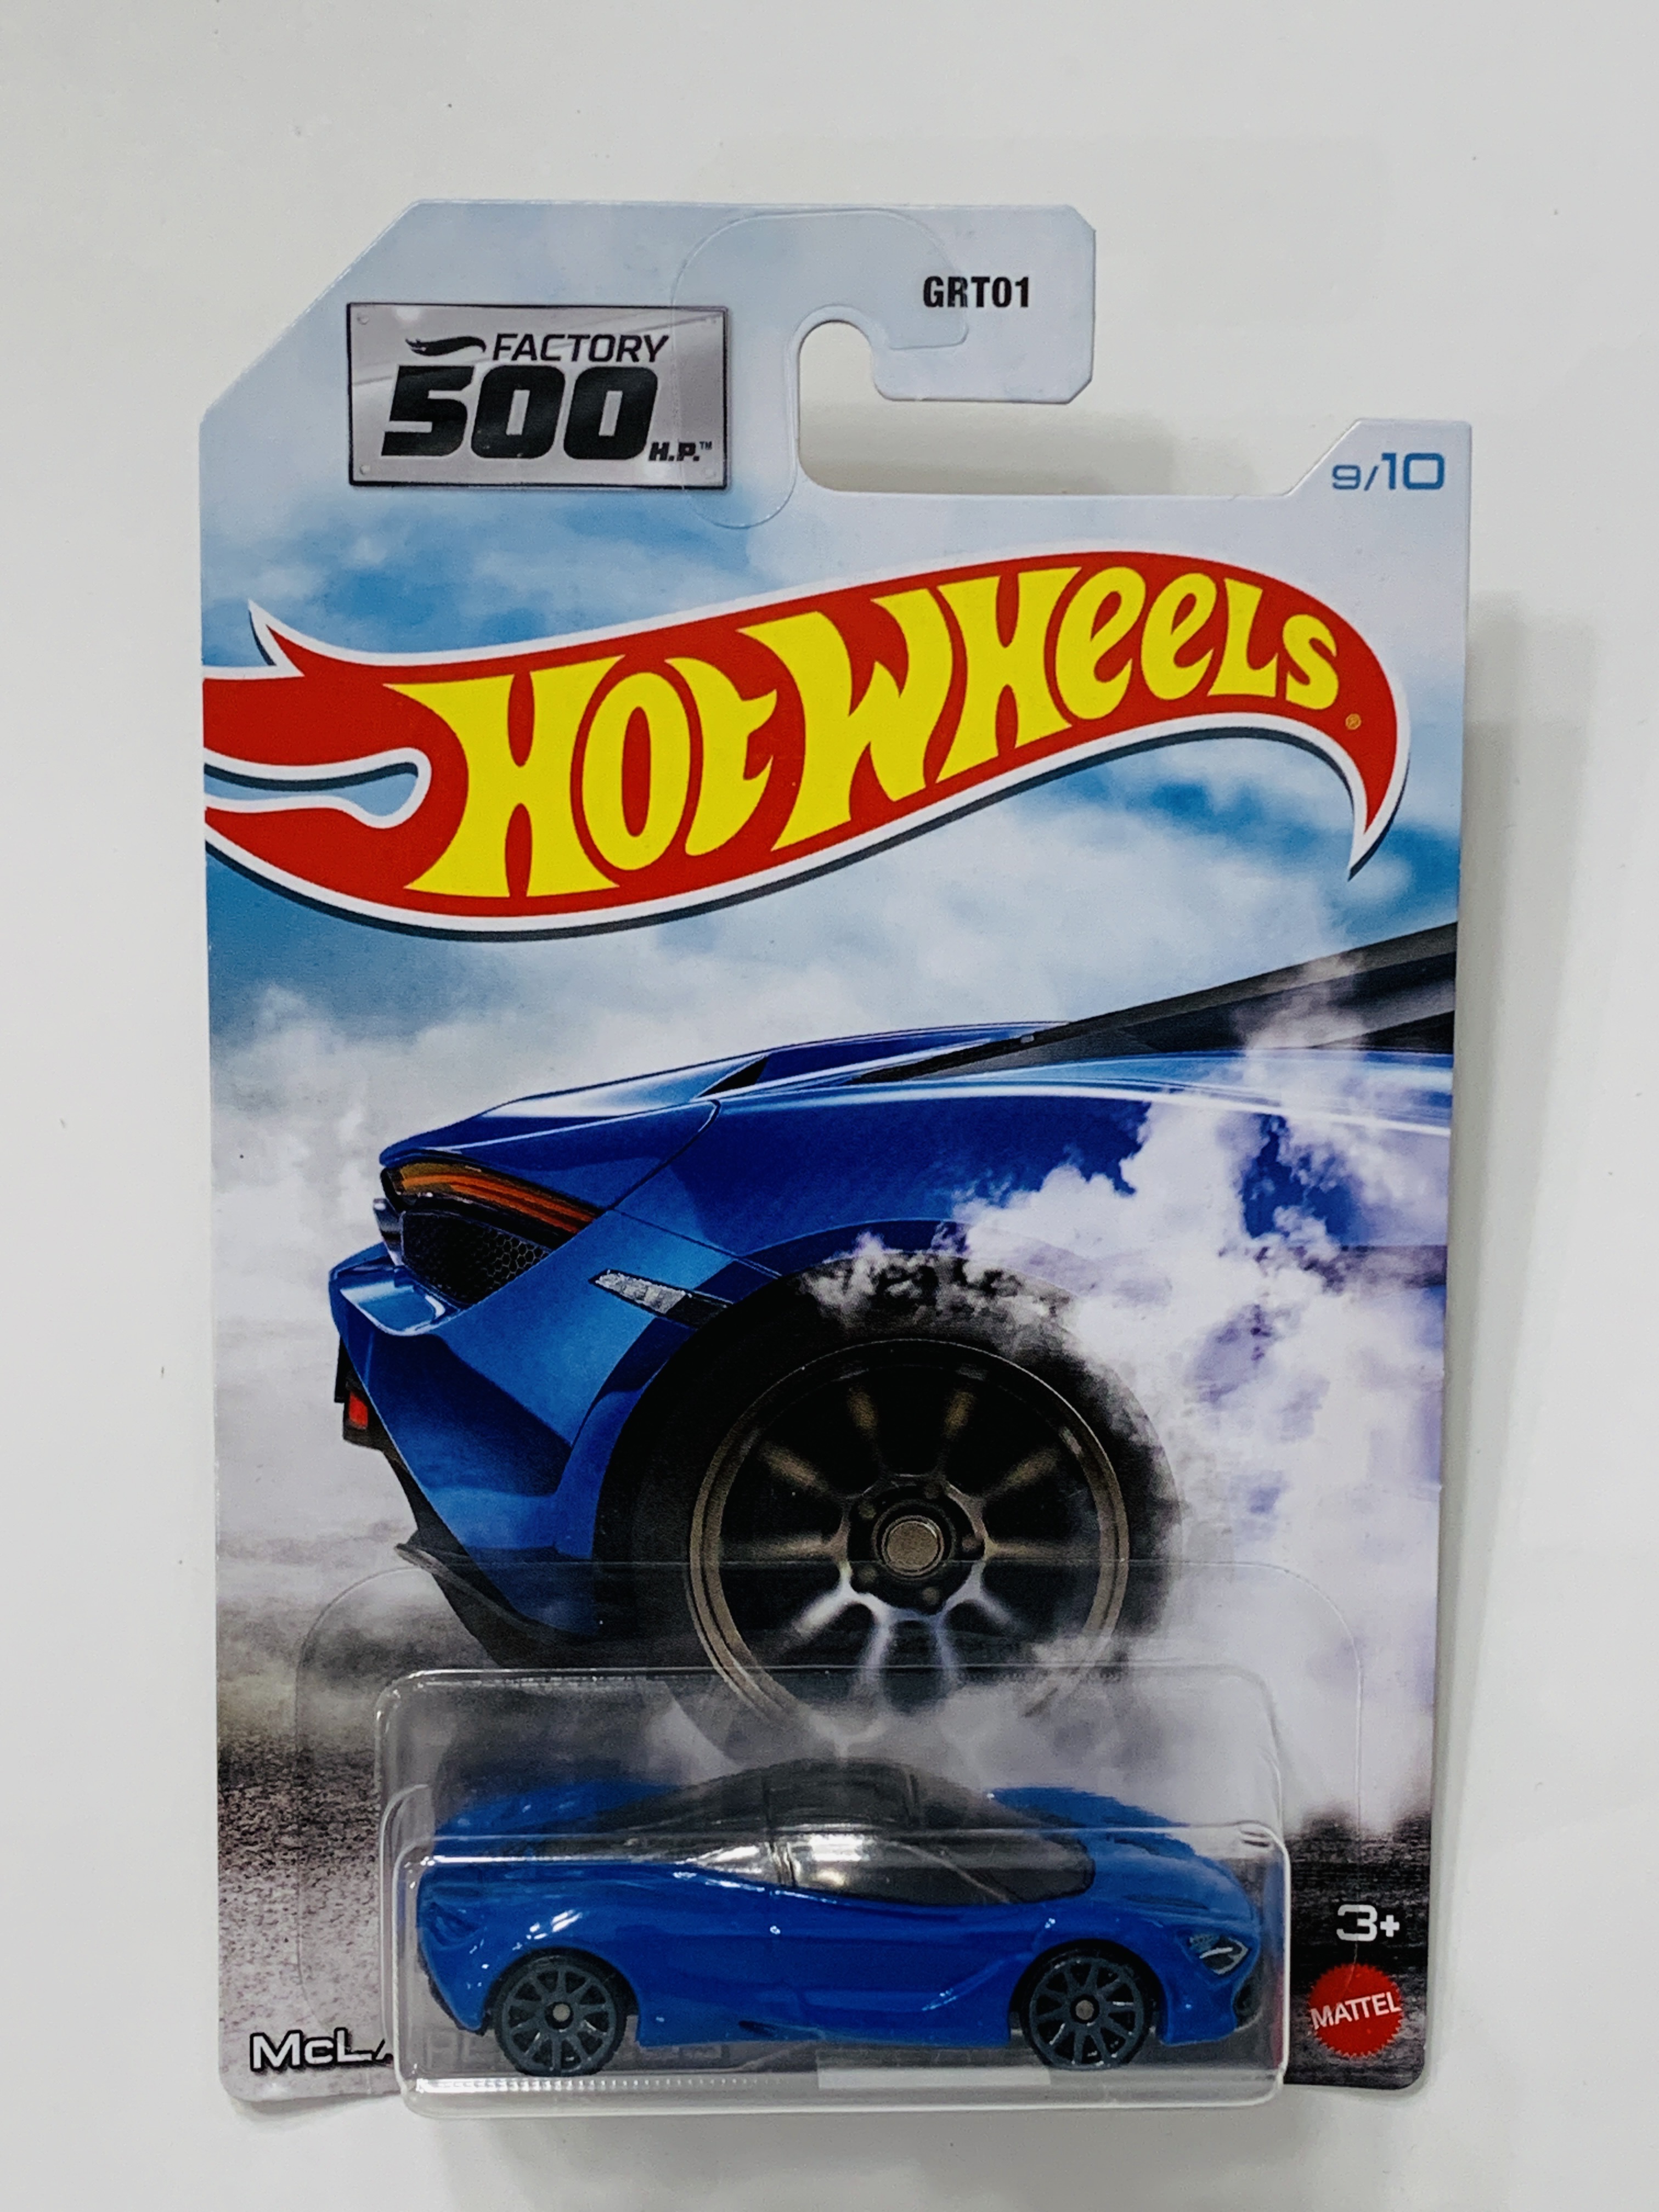 Hot Wheels Factory 500 H.P. Mclaren 720S - Walmart Exclusive